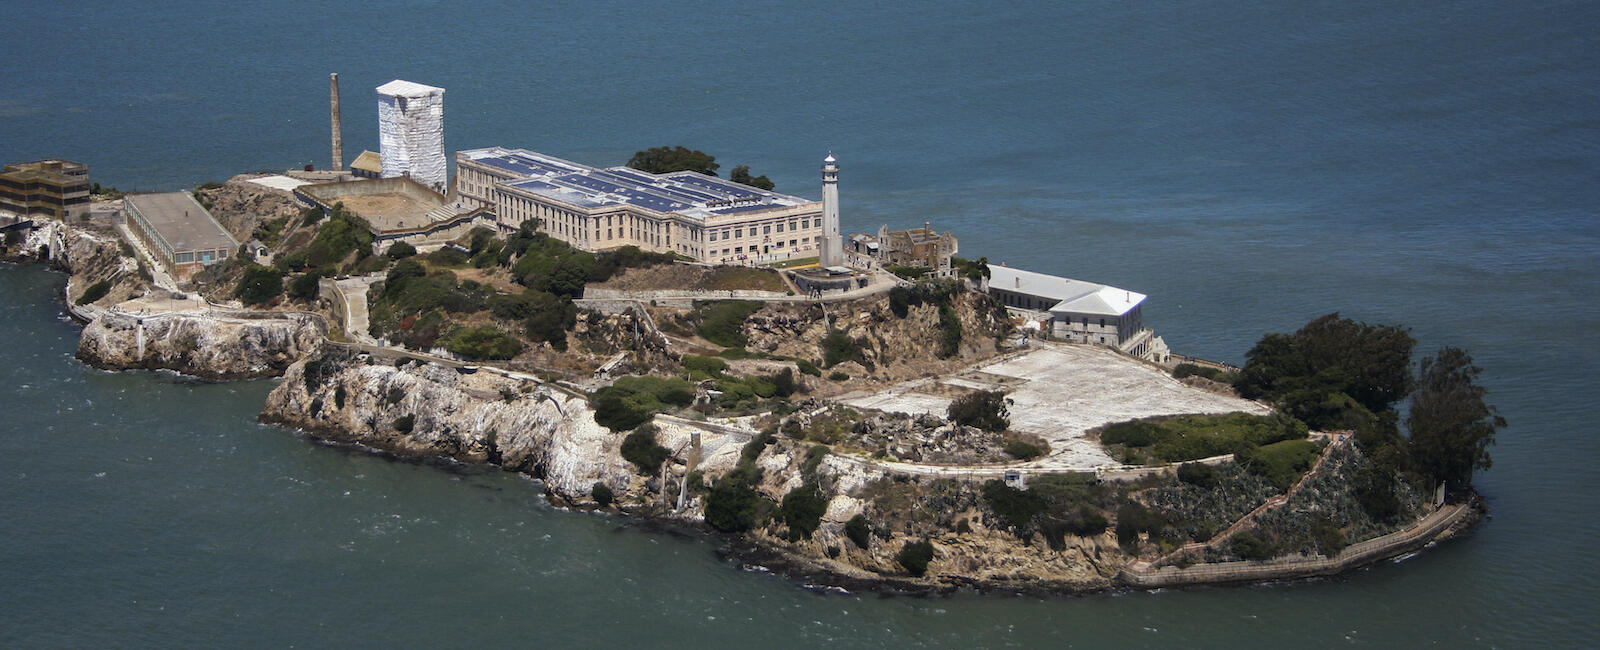 Alcatraz - Inside Escape Proof Alcatraz Prison Haunted By Al Capone ... Alcatraz Al Capone Escape